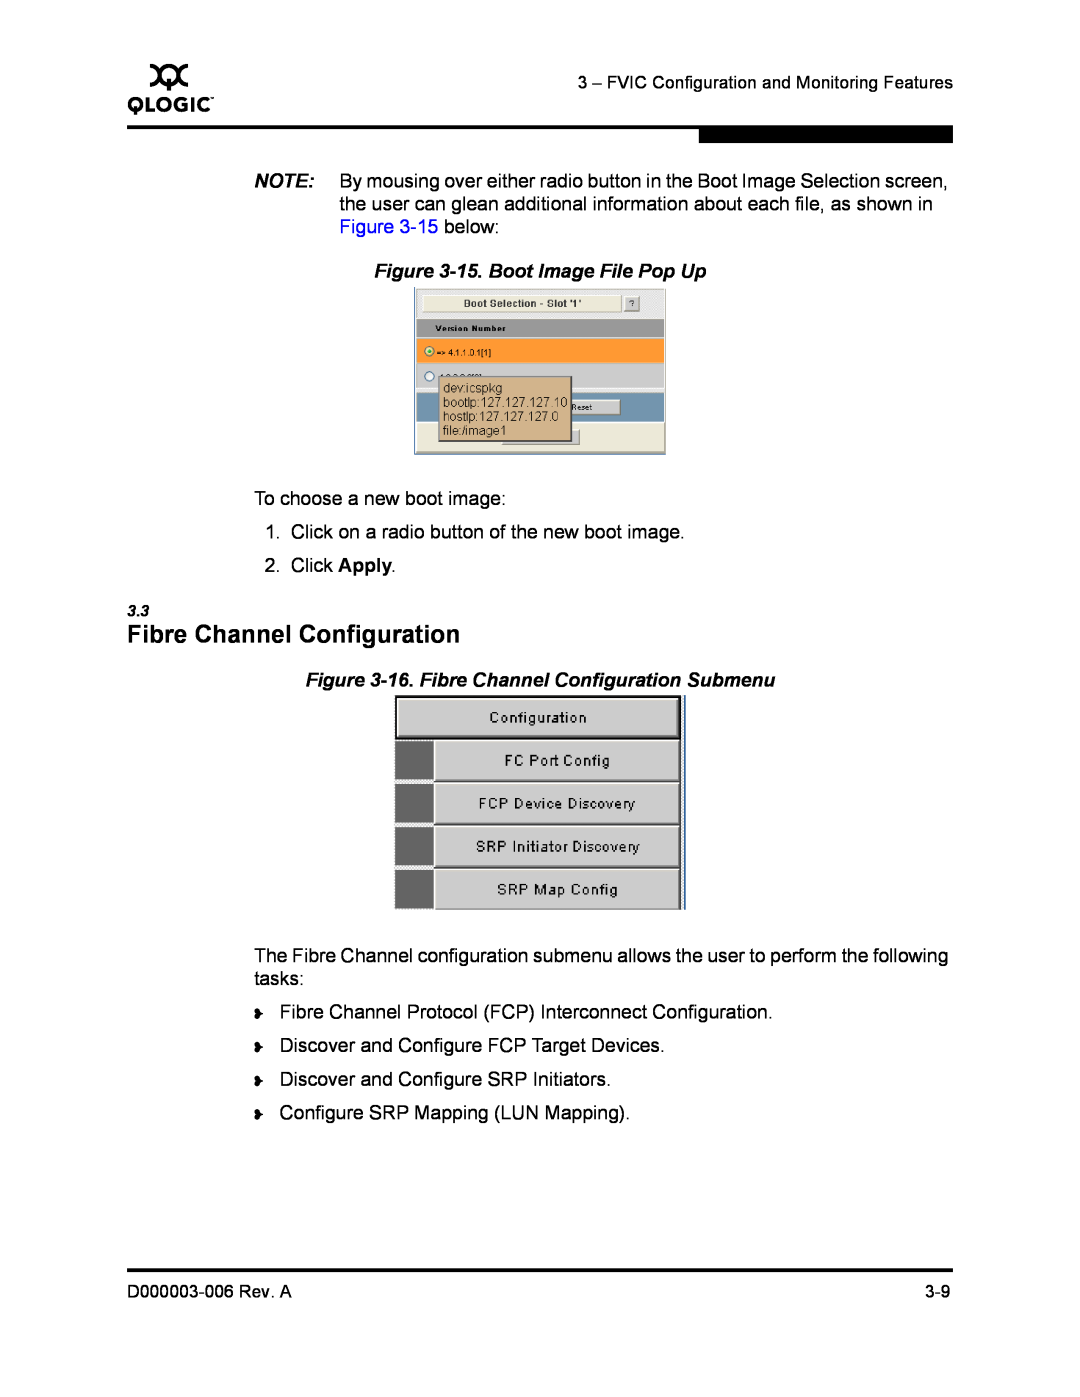 Q-Logic 9000 manual 15. Boot Image File Pop Up, 16. Fibre Channel Configuration Submenu 